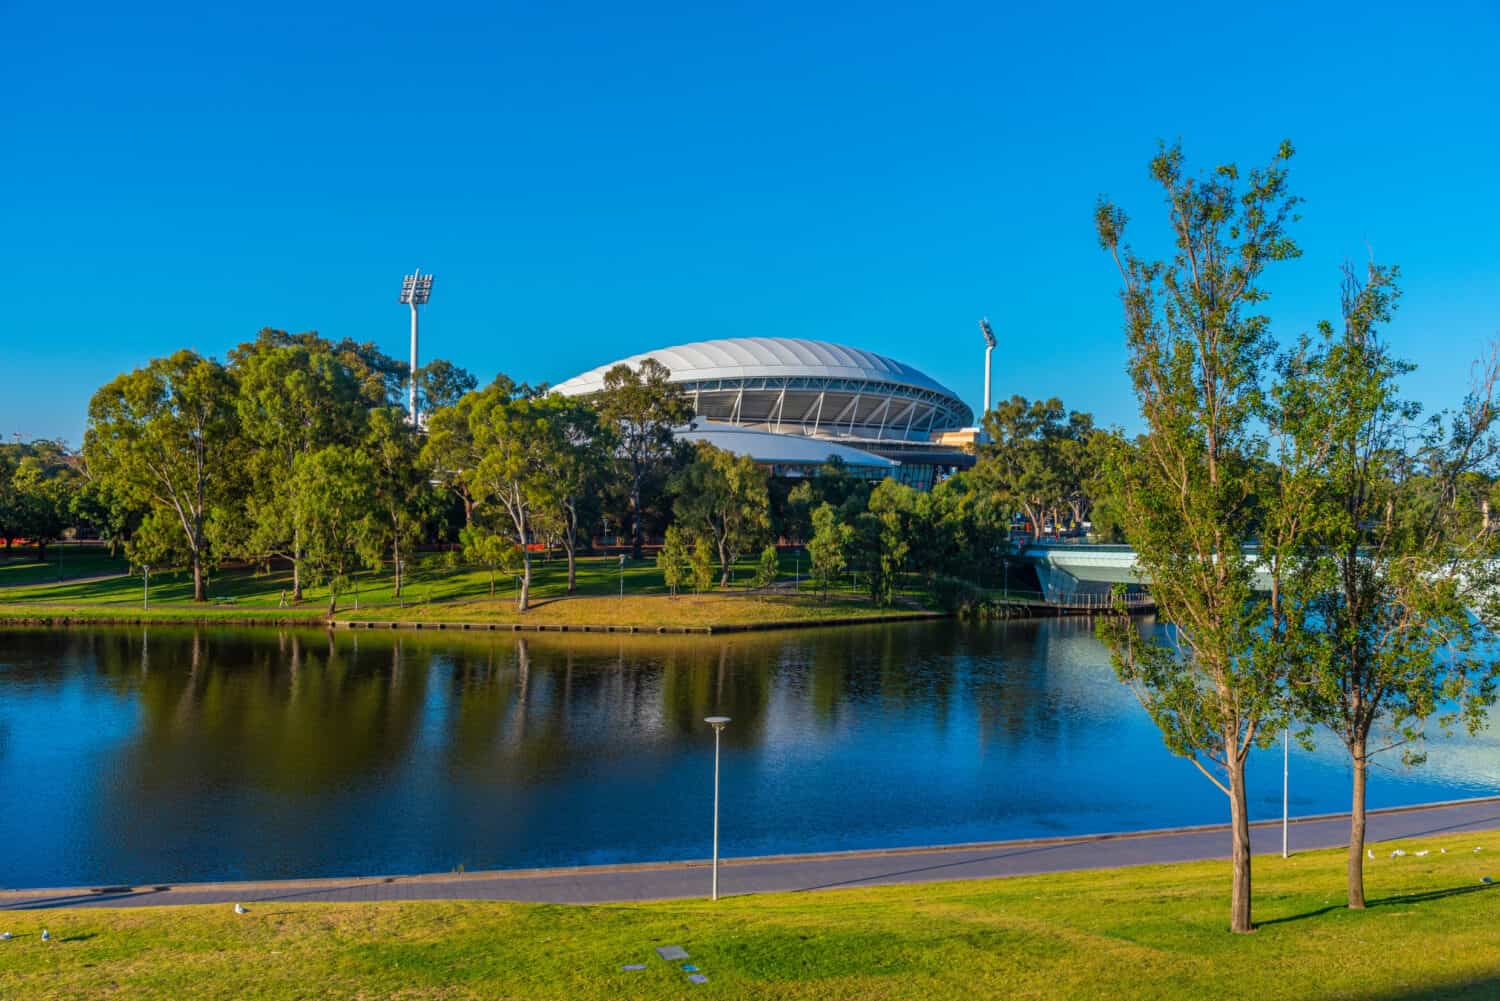 L'ovale di Adelaide visto dietro il fiume Torrens in Australia